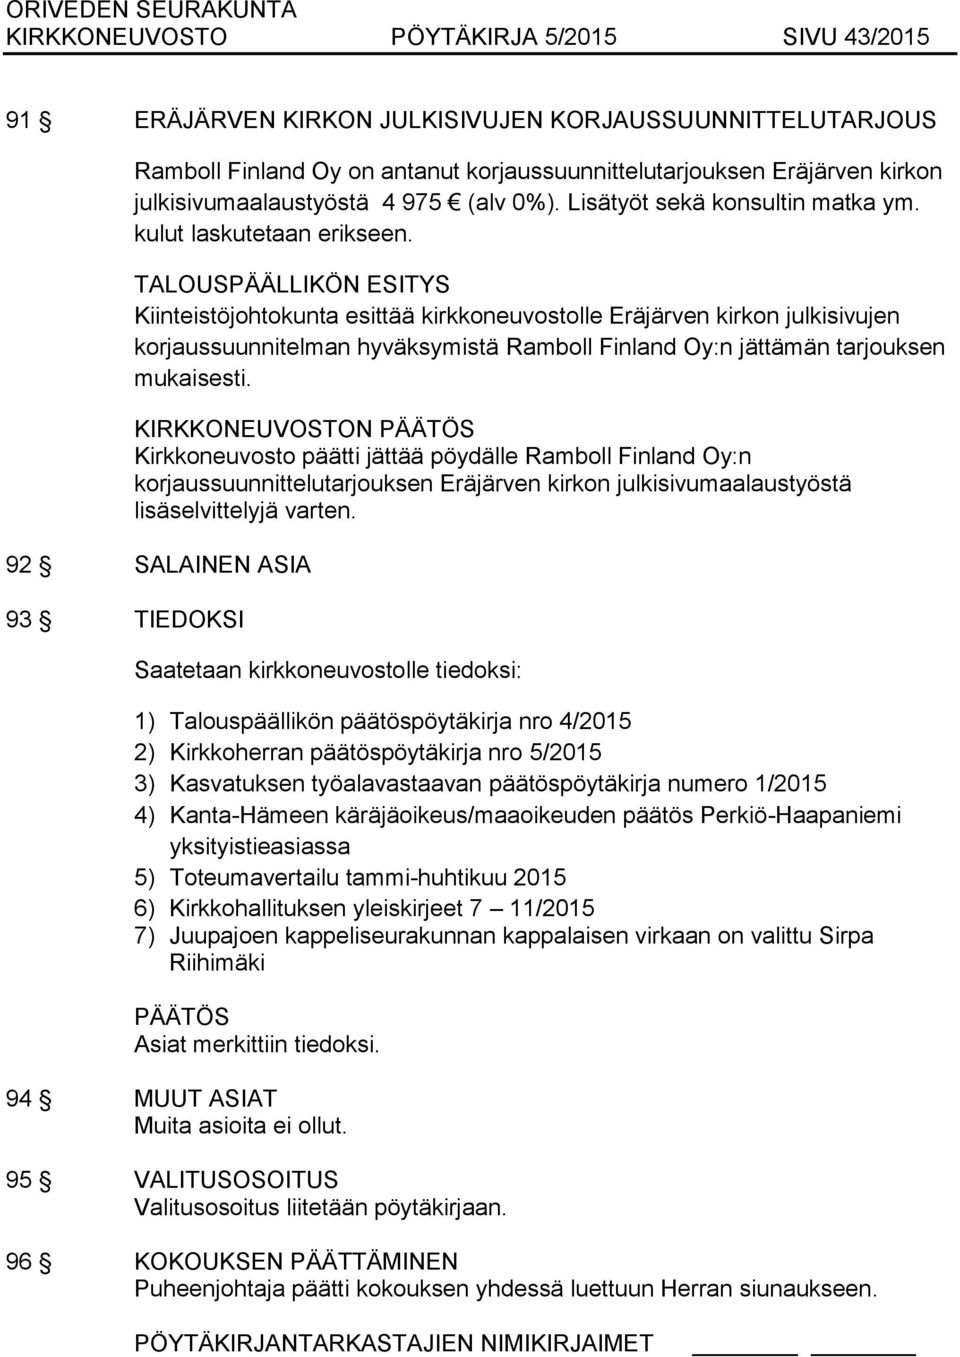 Kiinteistöjohtokunta esittää kirkkoneuvostolle Eräjärven kirkon julkisivujen korjaussuunnitelman hyväksymistä Ramboll Finland Oy:n jättämän tarjouksen mukaisesti.